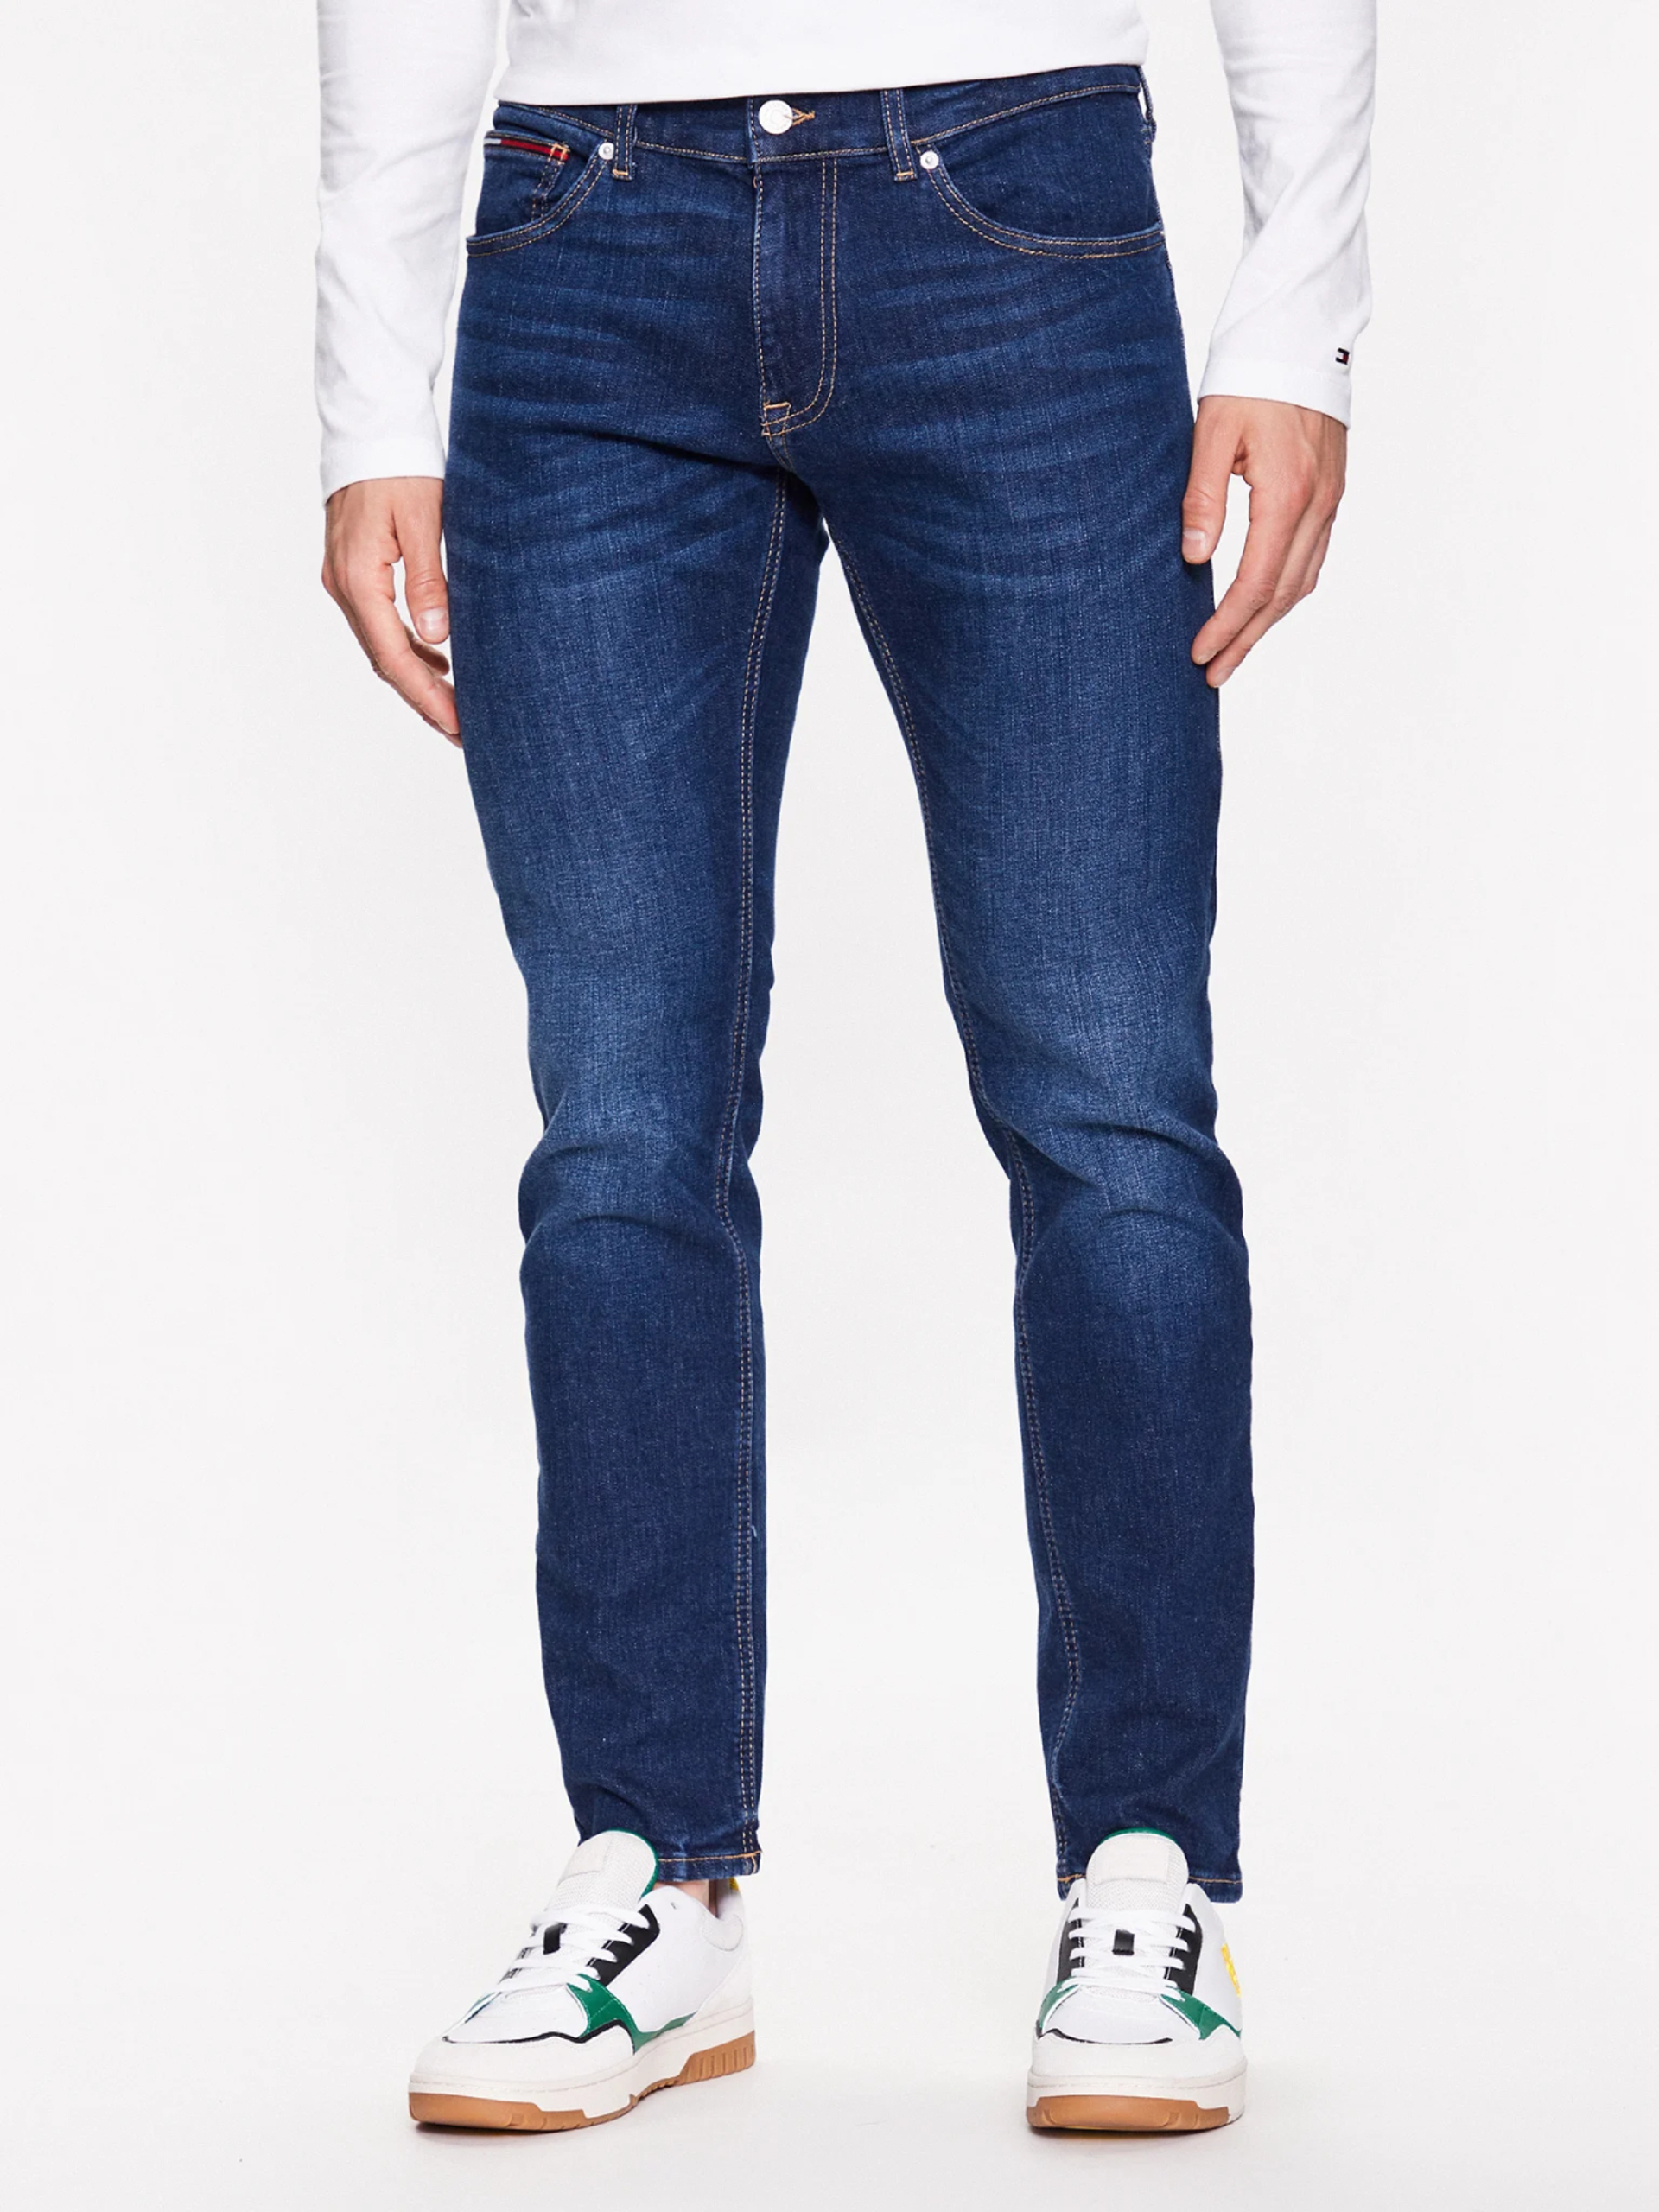 Tommy Jeans pánské modré džíny Scanton - 36/34 (1BK)